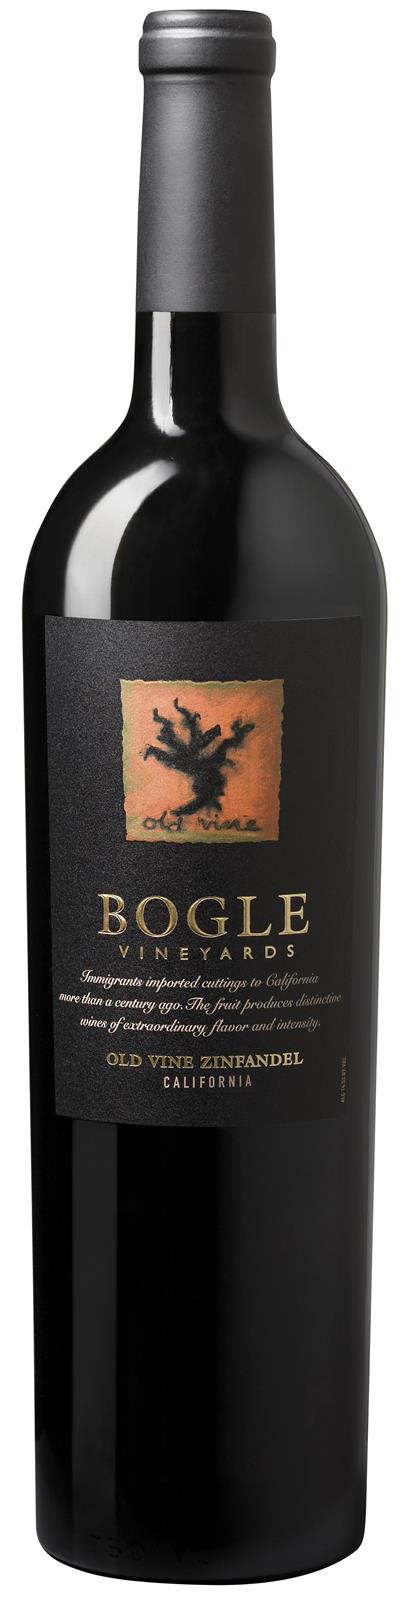 Bogle Vineyards 'Old Vine' Zinfandel 2018 (California)